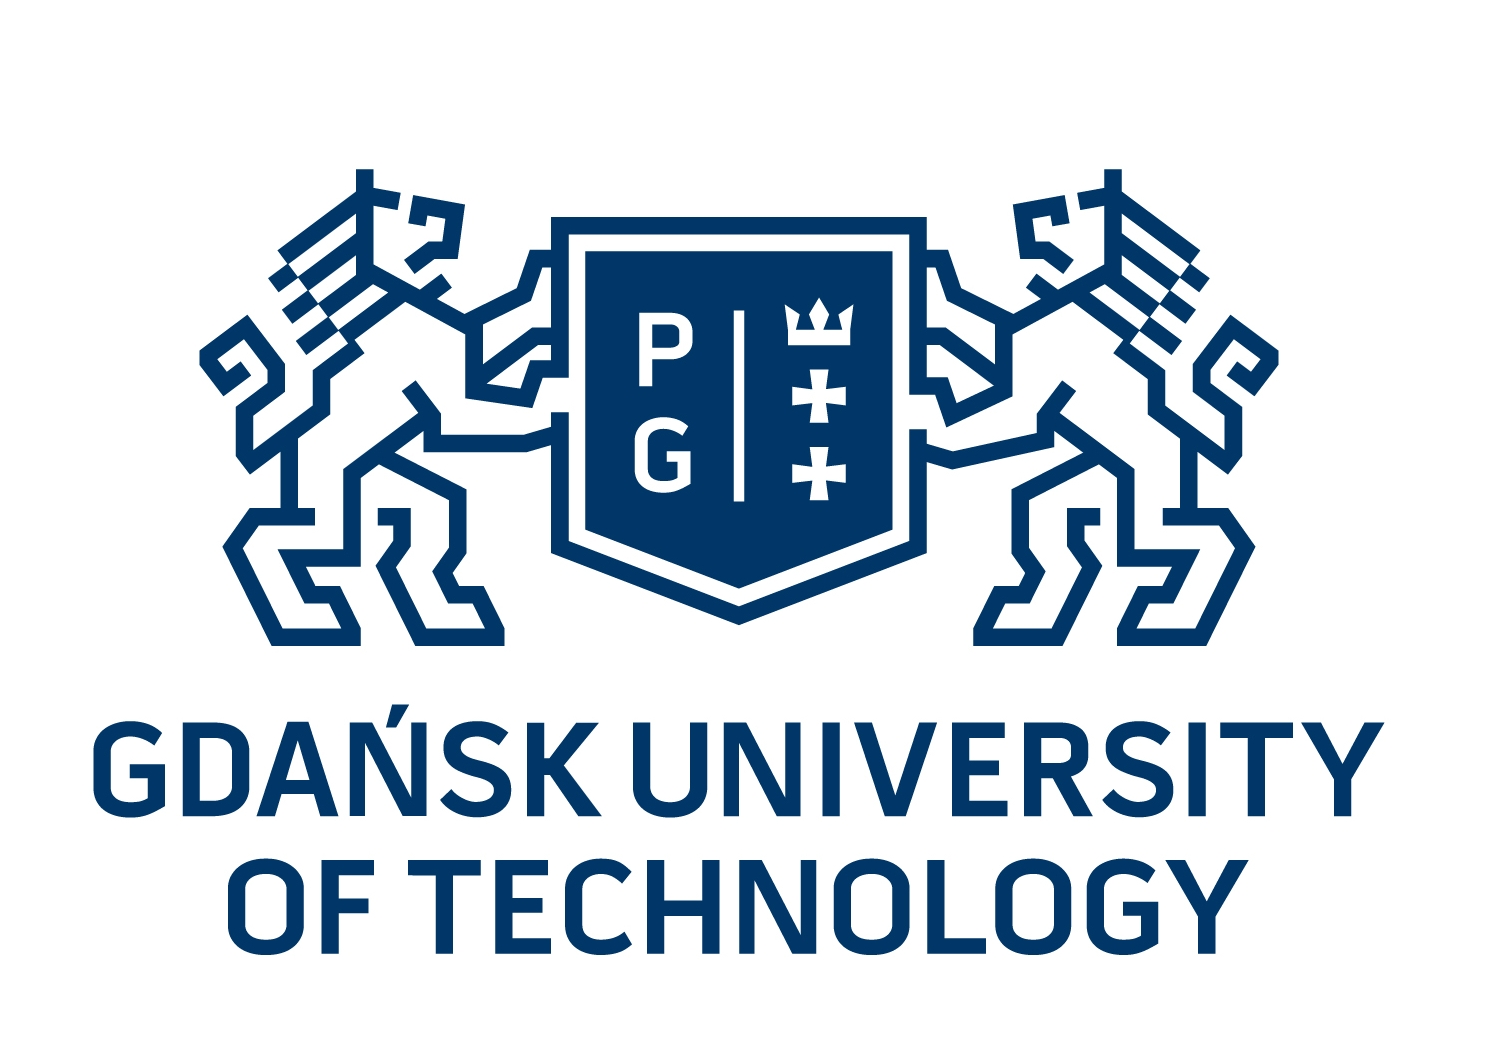 Gdansk University of Technology, Ministry Points 20